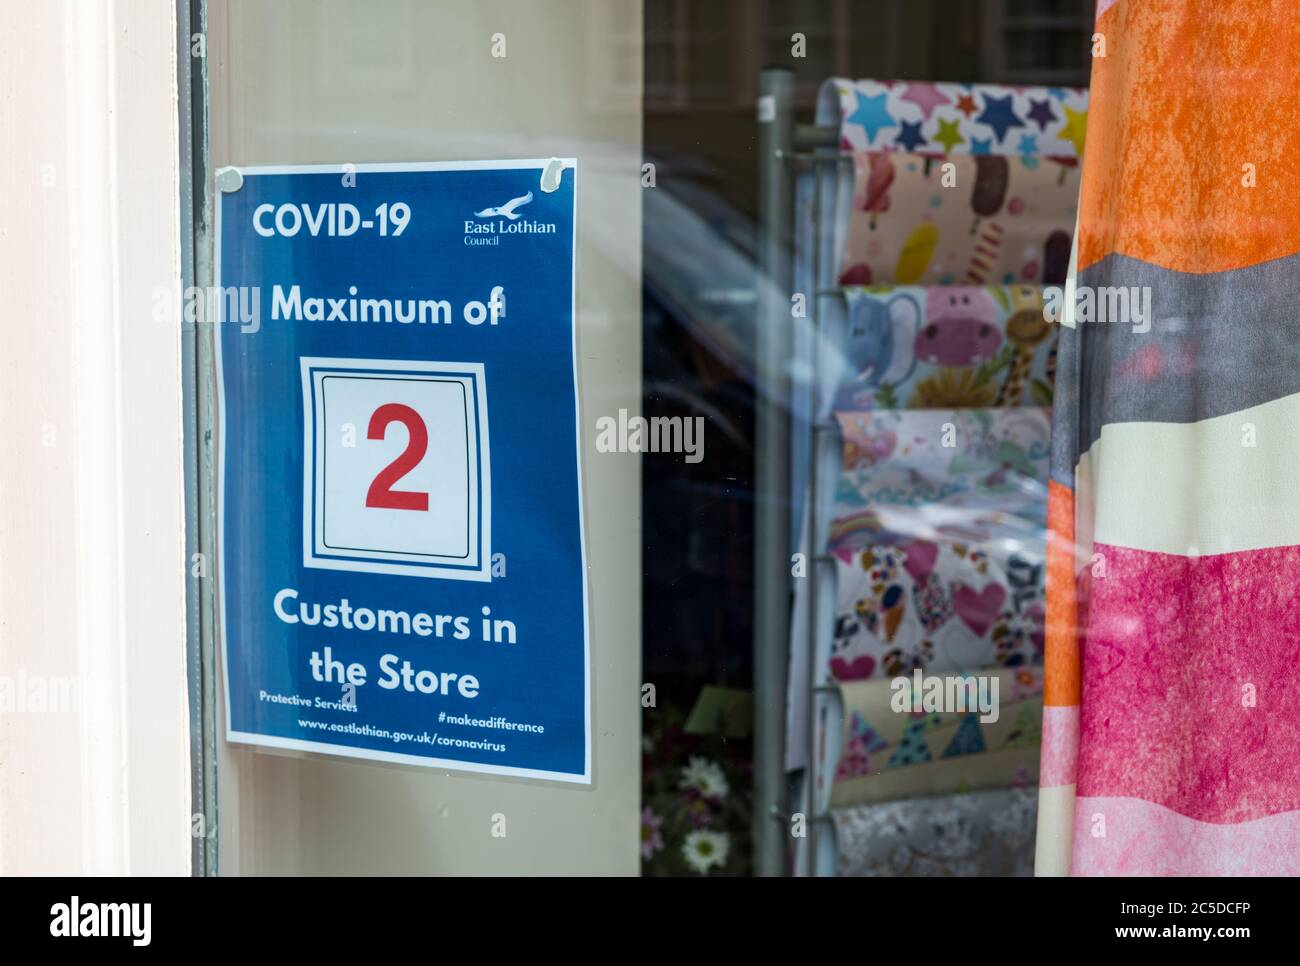 Haddington, East Lothian, Schottland, Großbritannien 2. Juli 2020. Covid-19 Leben: Das tägliche Leben in der Marktstadt ist ruhig, auch wenn die Absperrung erleichtert wird und einige nicht-wesentliche Geschäfte geöffnet sind. Im Stadtzentrum herrscht normalerweise an einem Wochentag morgens ein geschäftiges Treiben. Ein kleiner Laden in der Hauptstraße mit einer Benachrichtigung, die während der Pandemie maximal 2 Kunden im Laden erlaubt Stockfoto